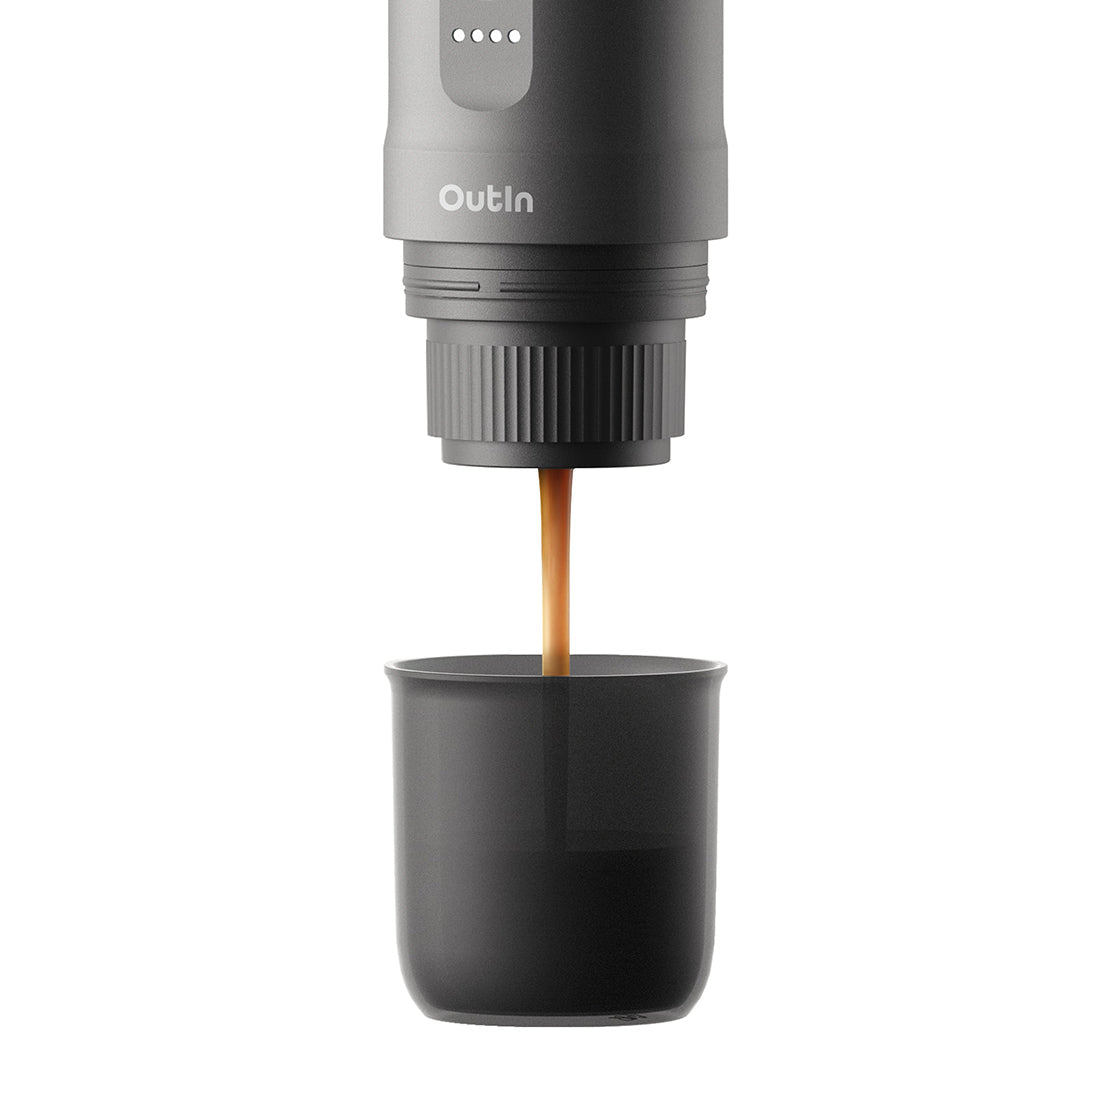 Find Your favorite Outin Nano Portable Espresso Maker today